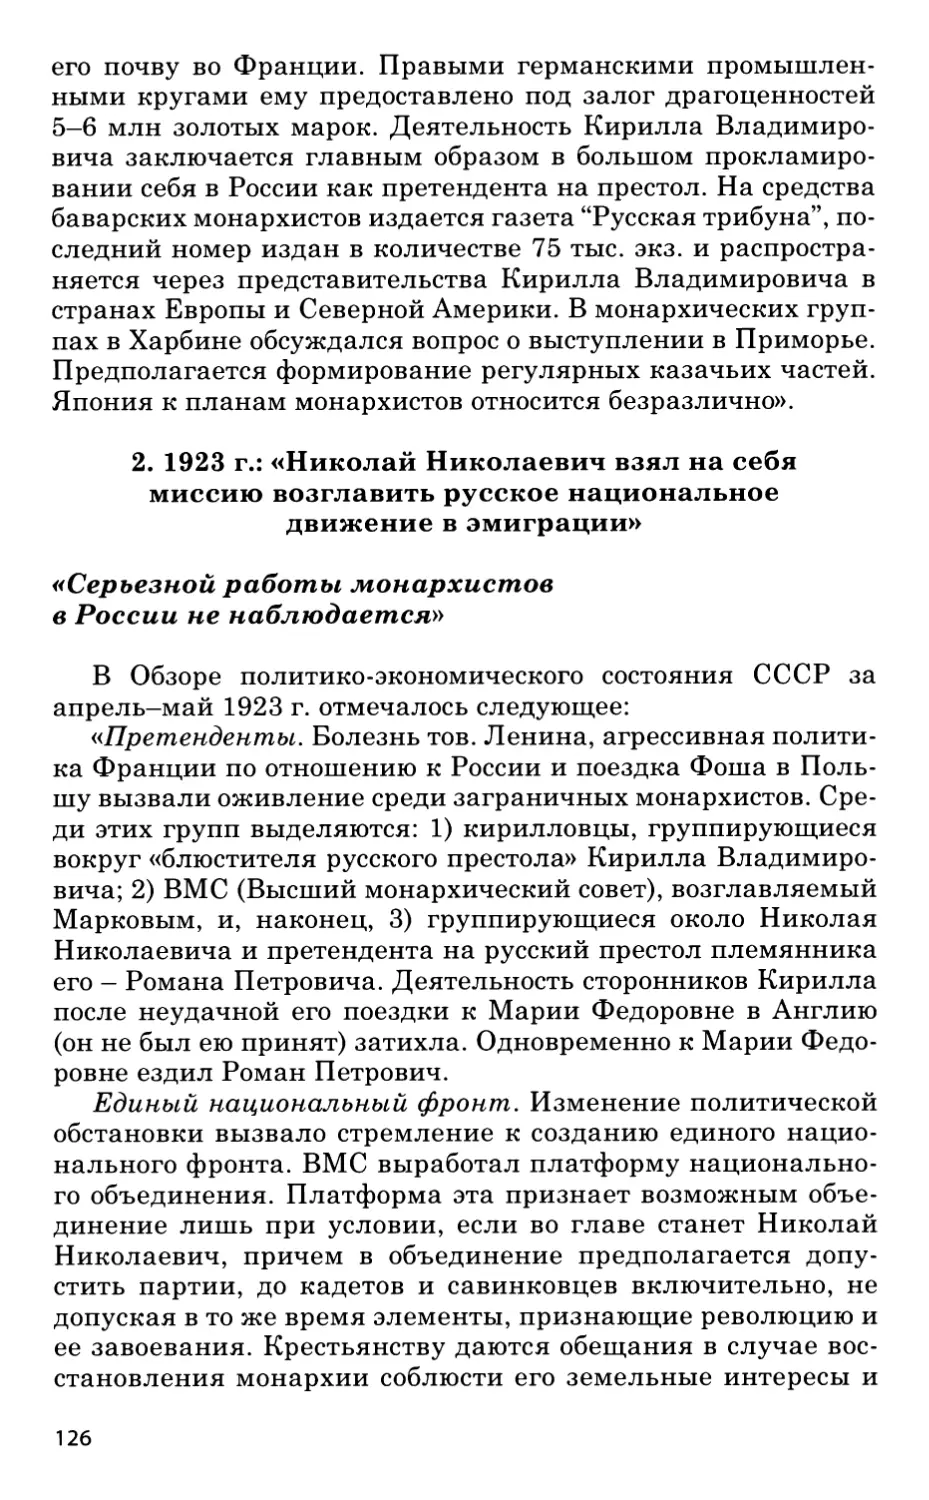 2. 1923 год: «Николай Николаевич взял на себя миссию возглавить русское национальное движение в эмиграции»